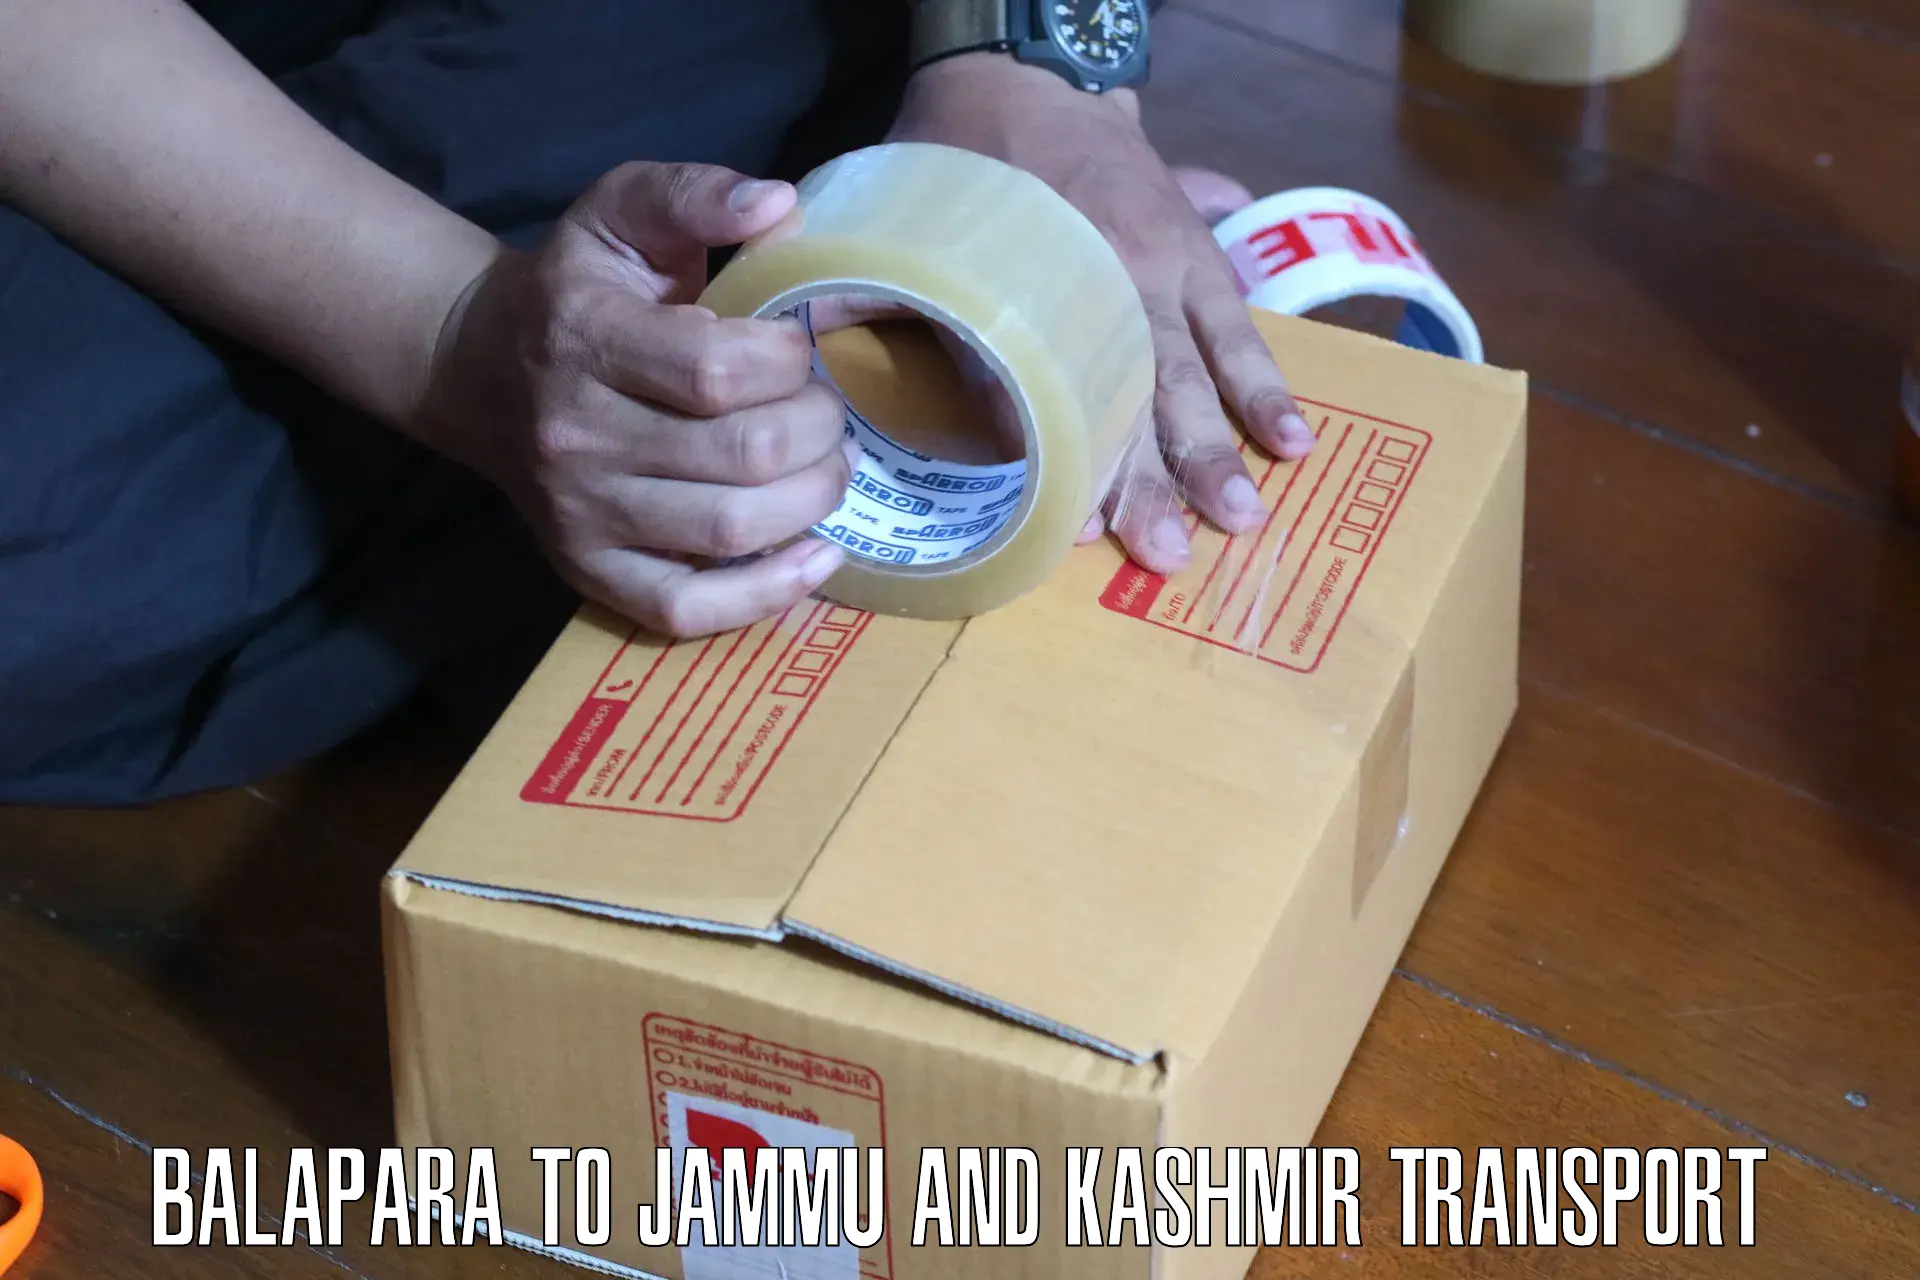 Daily transport service Balapara to Jammu and Kashmir